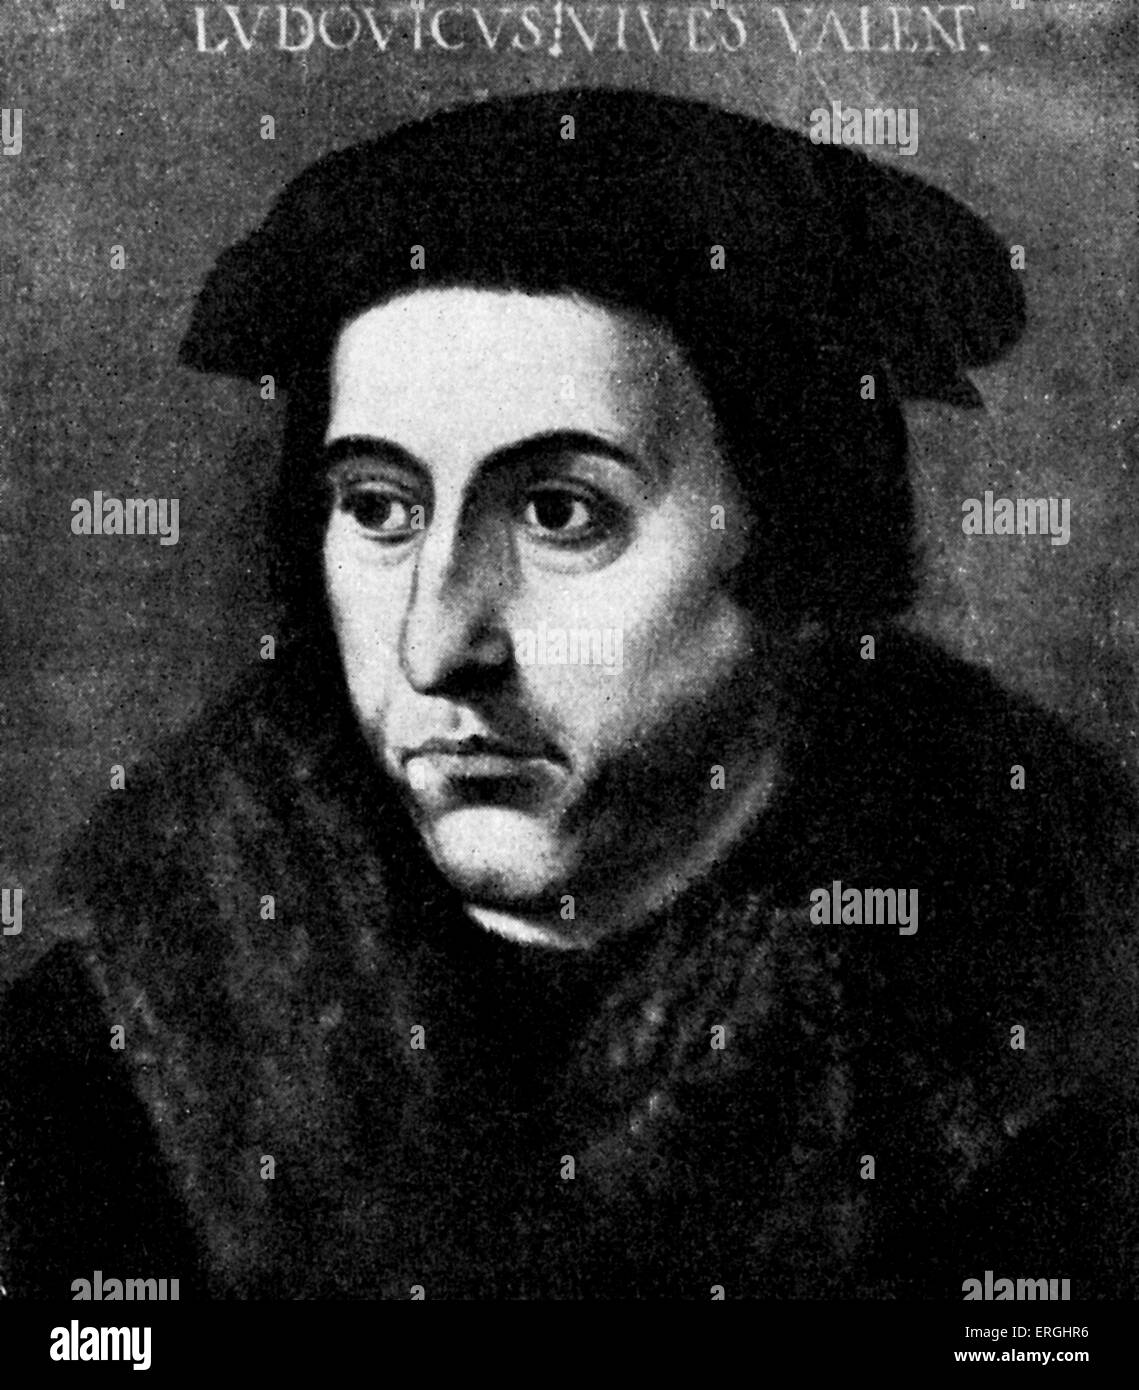 Juan Luis Vives - von der Malerei von einem unbekannten Meister. Valencia spanischer Gelehrter und Humanist, 6. Mai 1493 – 6. März 1540. Stockfoto